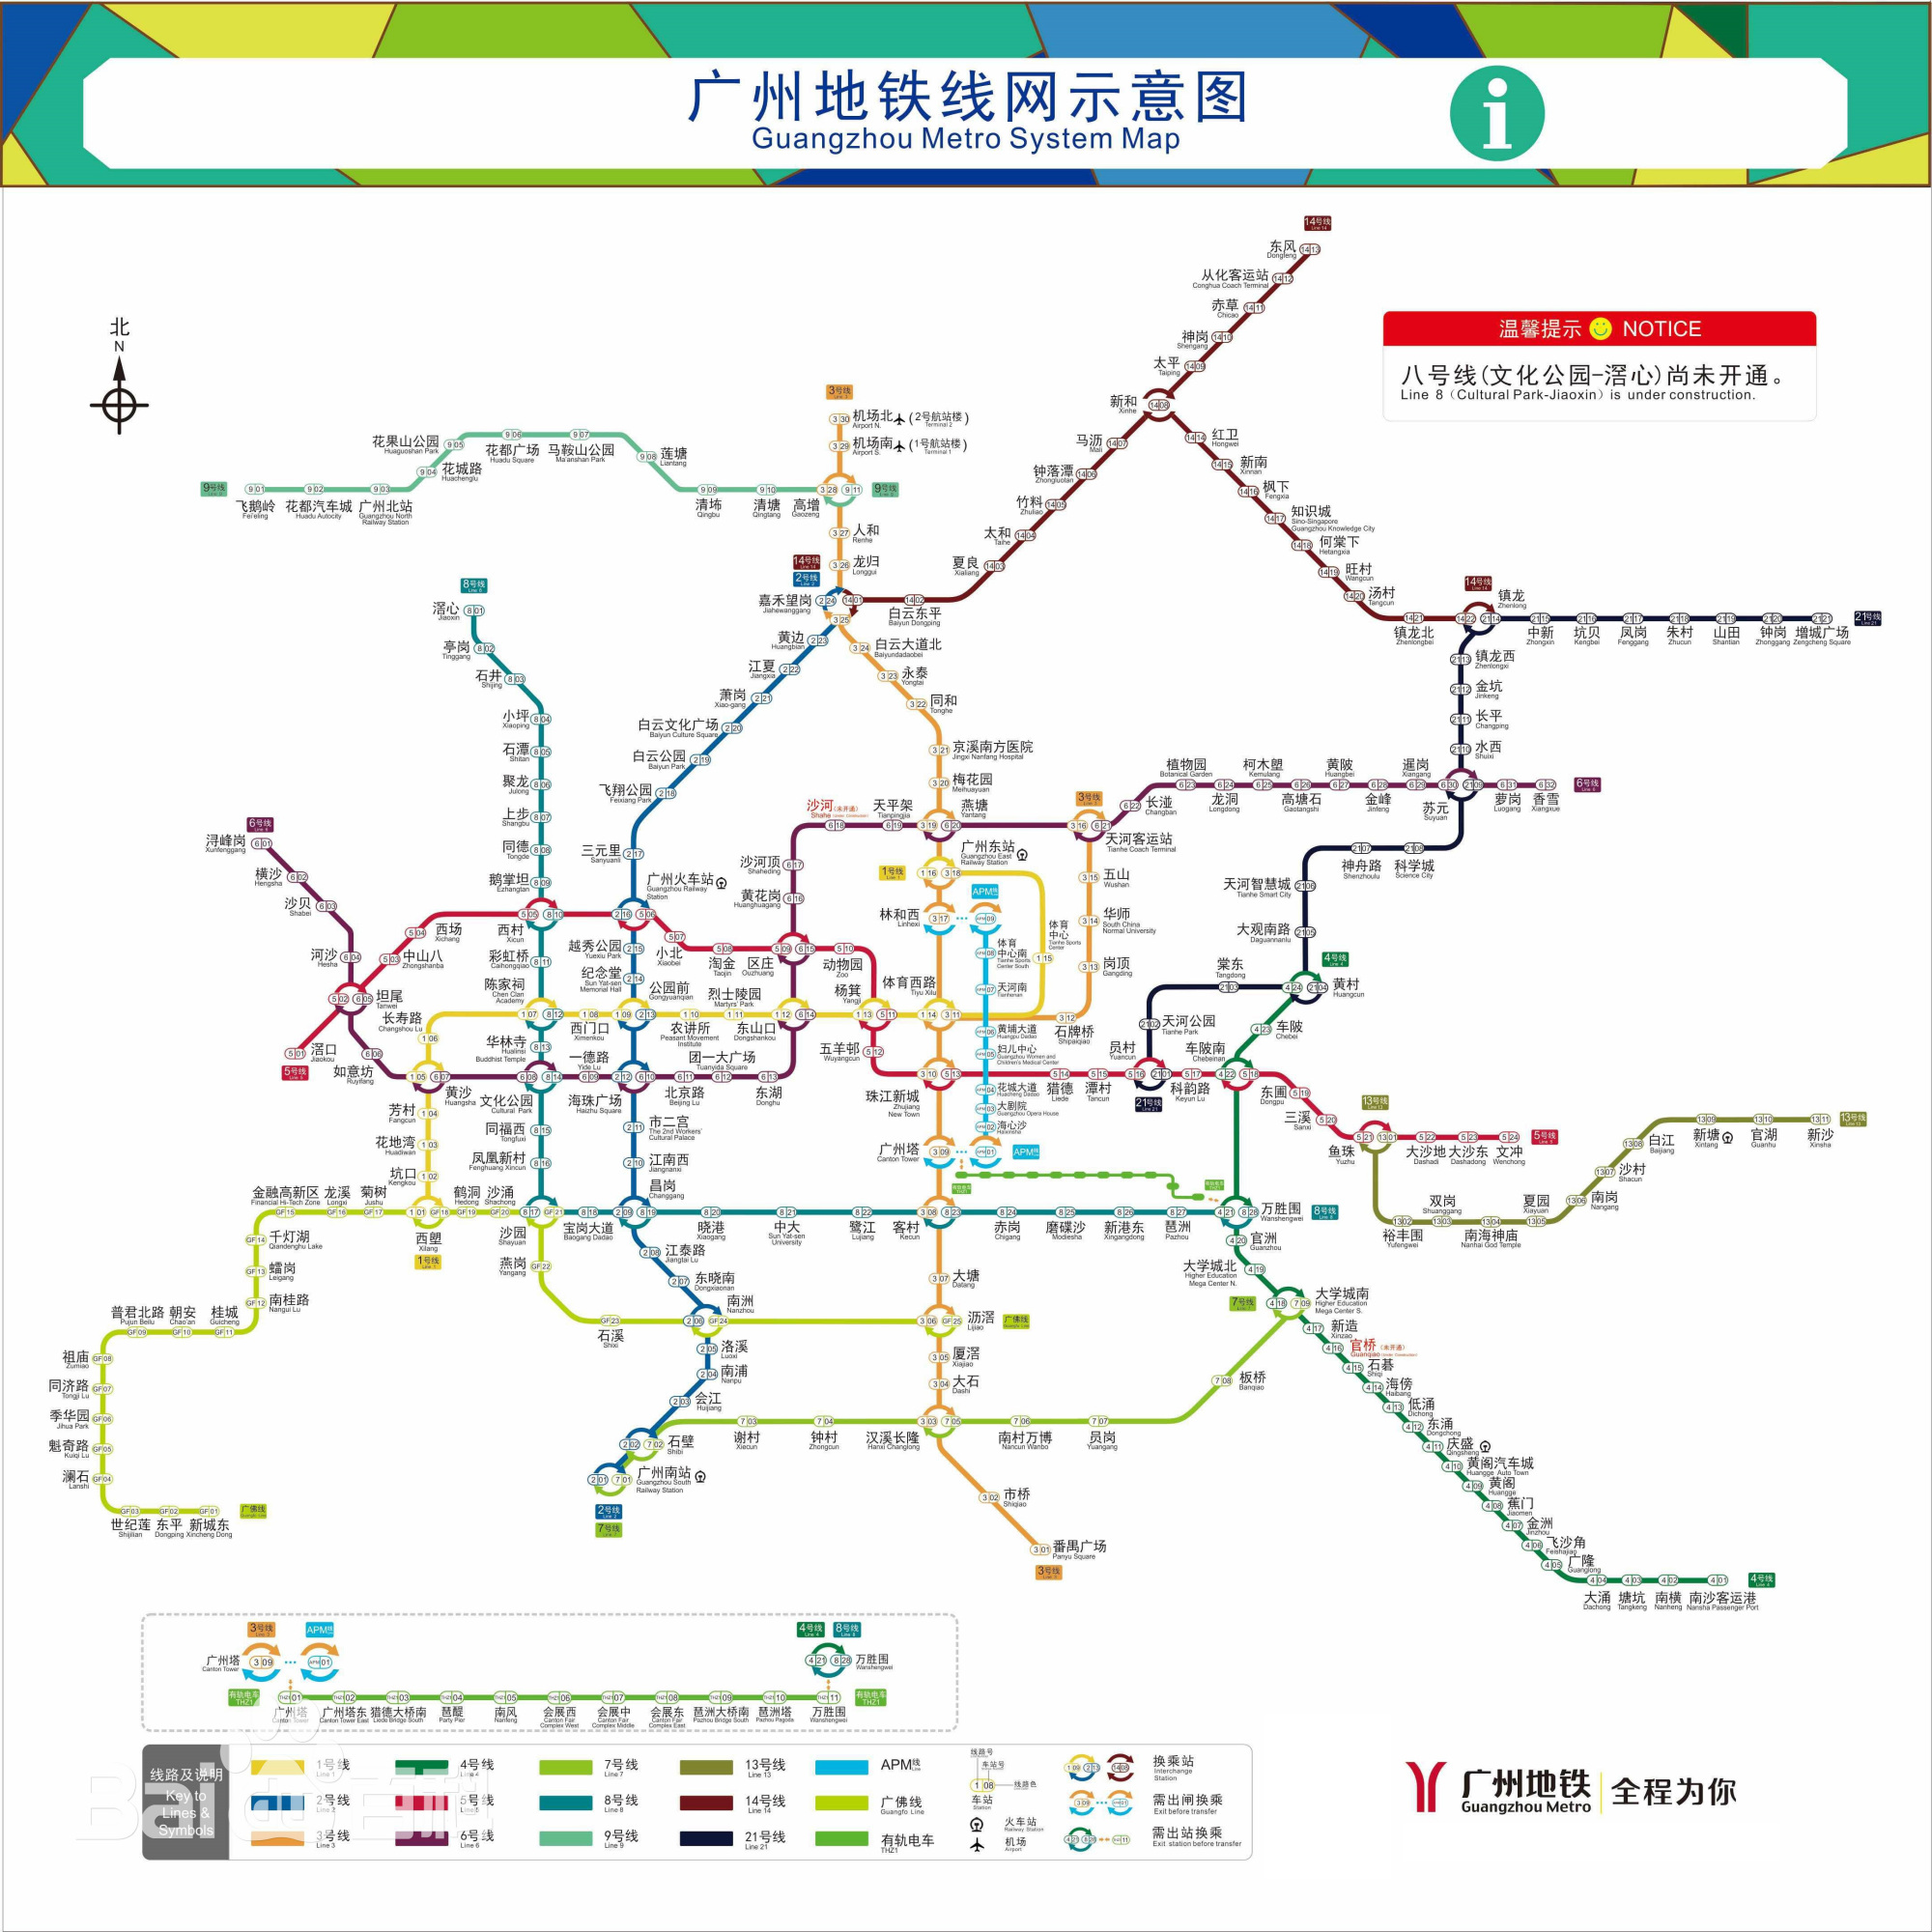 2023年,广州地铁里程将突破800千米,12条地铁线路同时在建